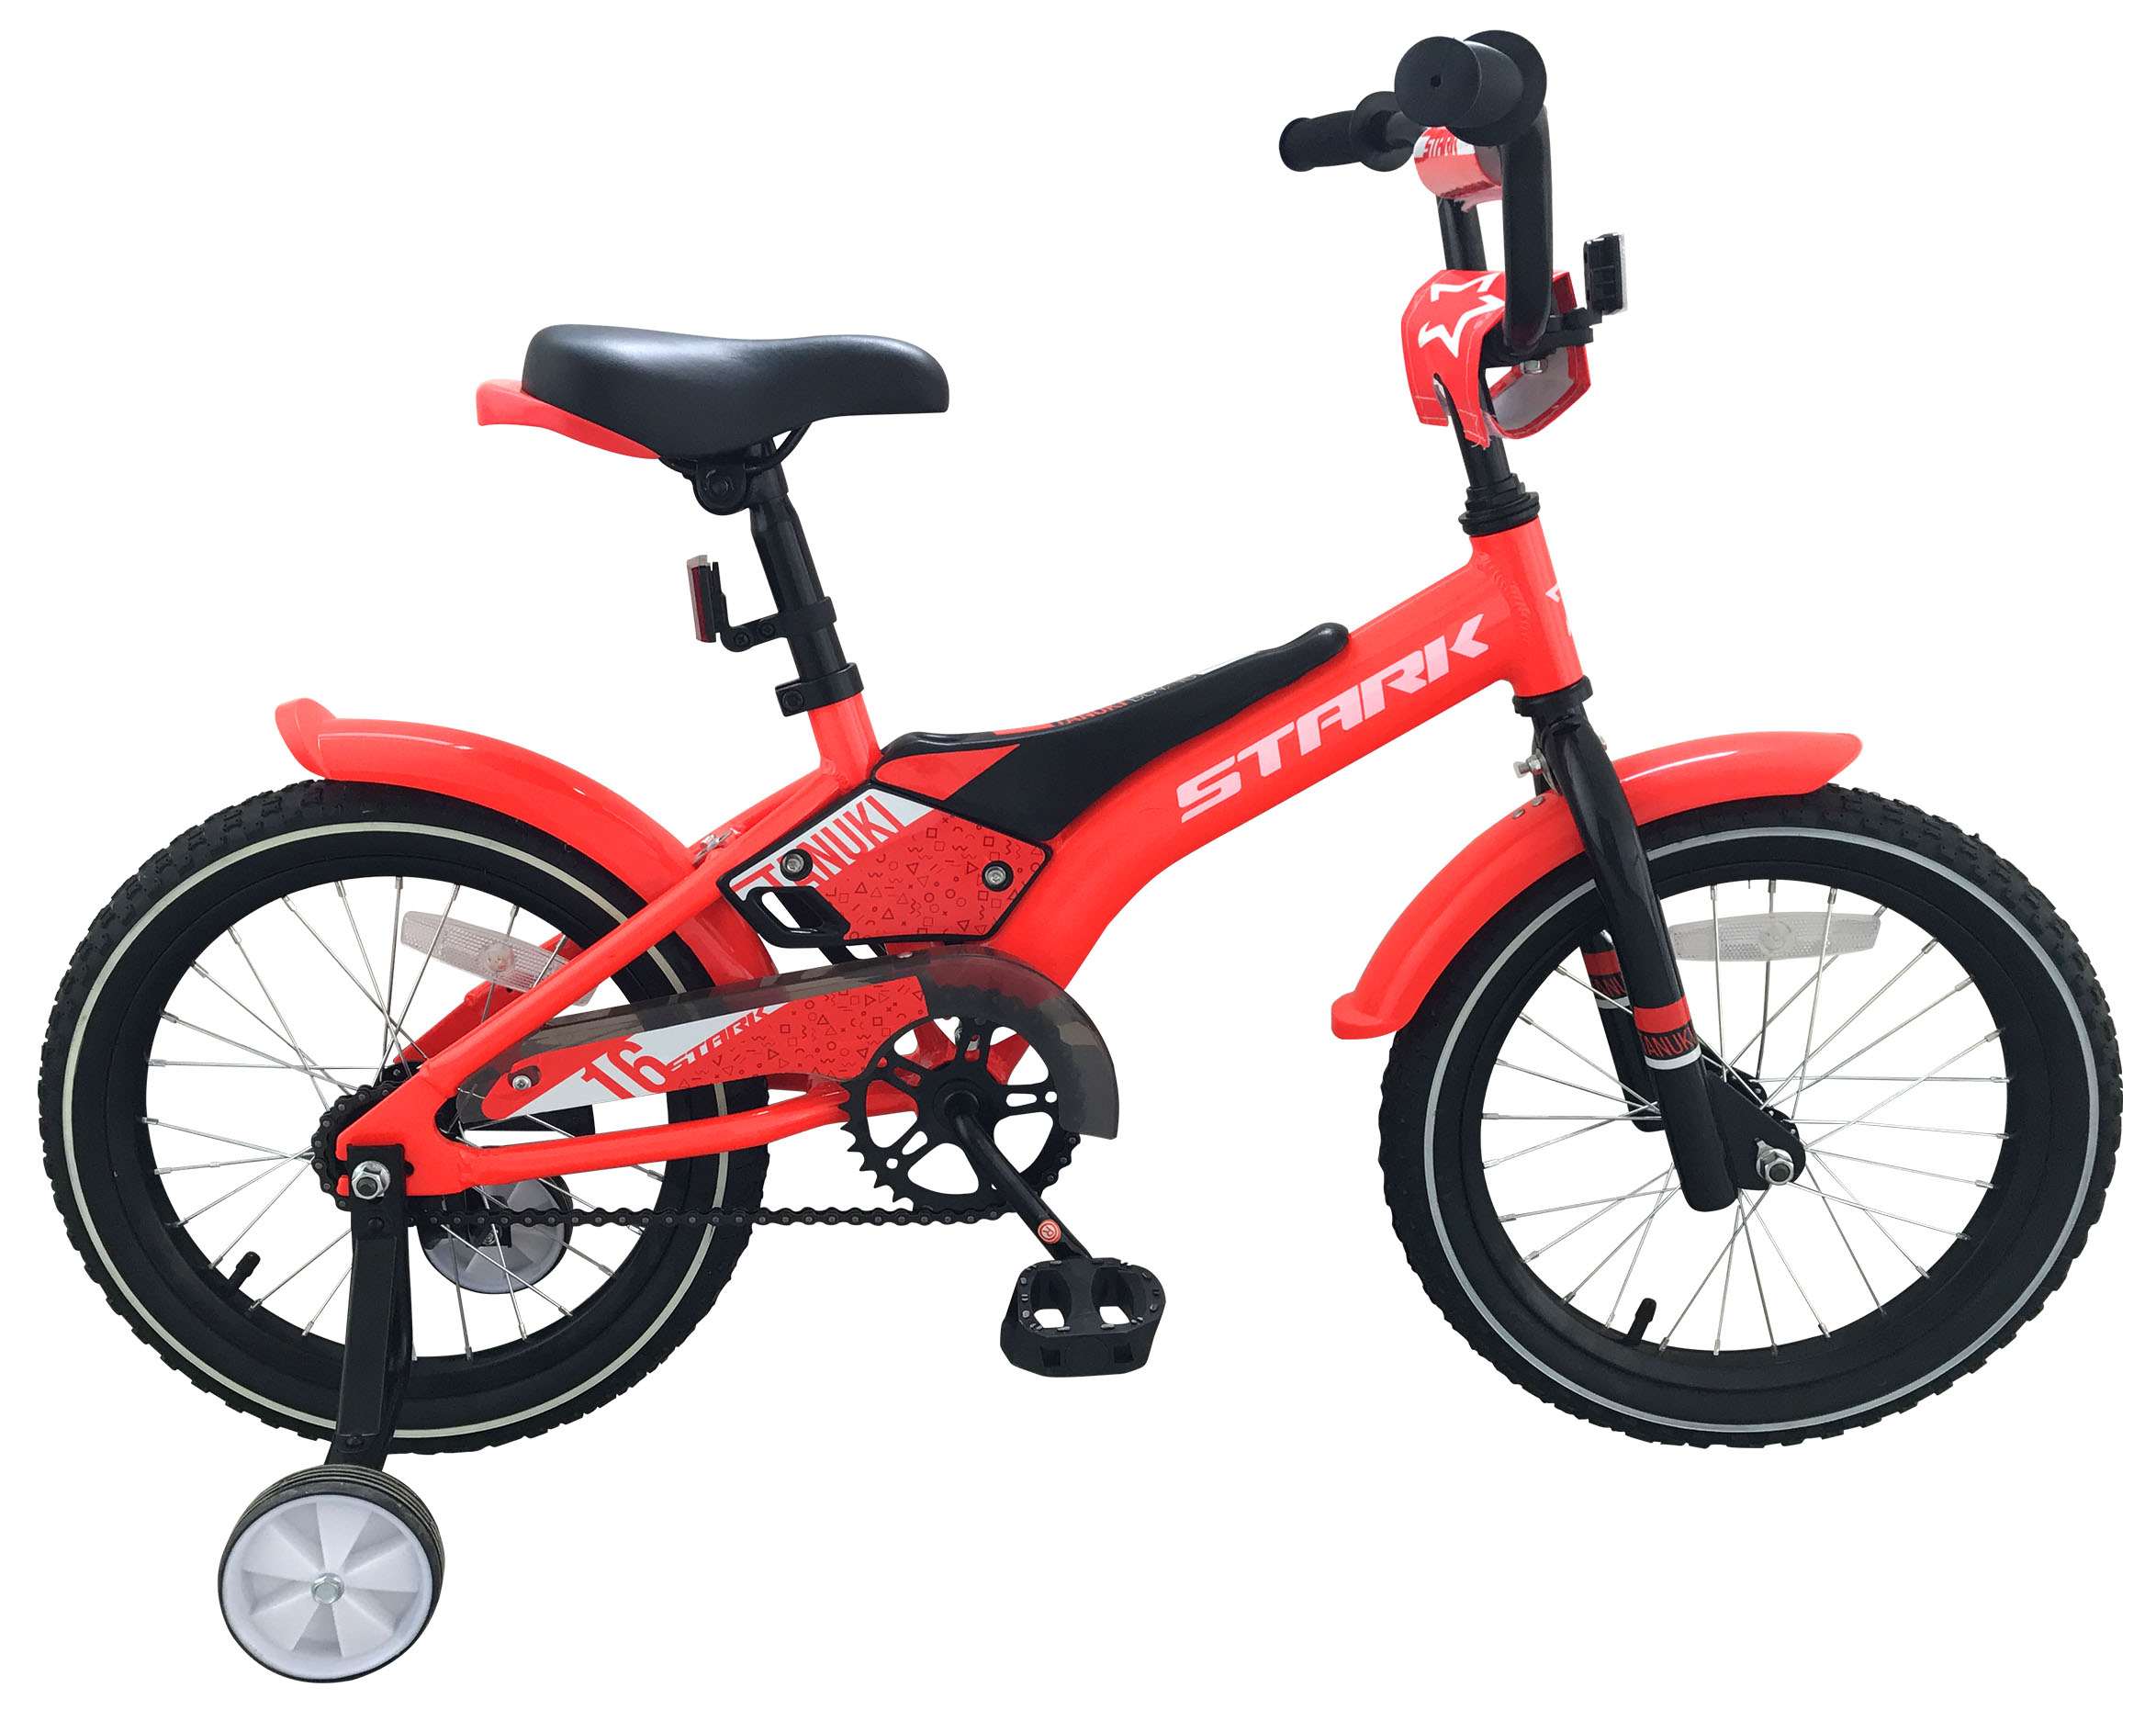  Отзывы о Детском велосипеде Stark Tanuki 16 Boy 2019